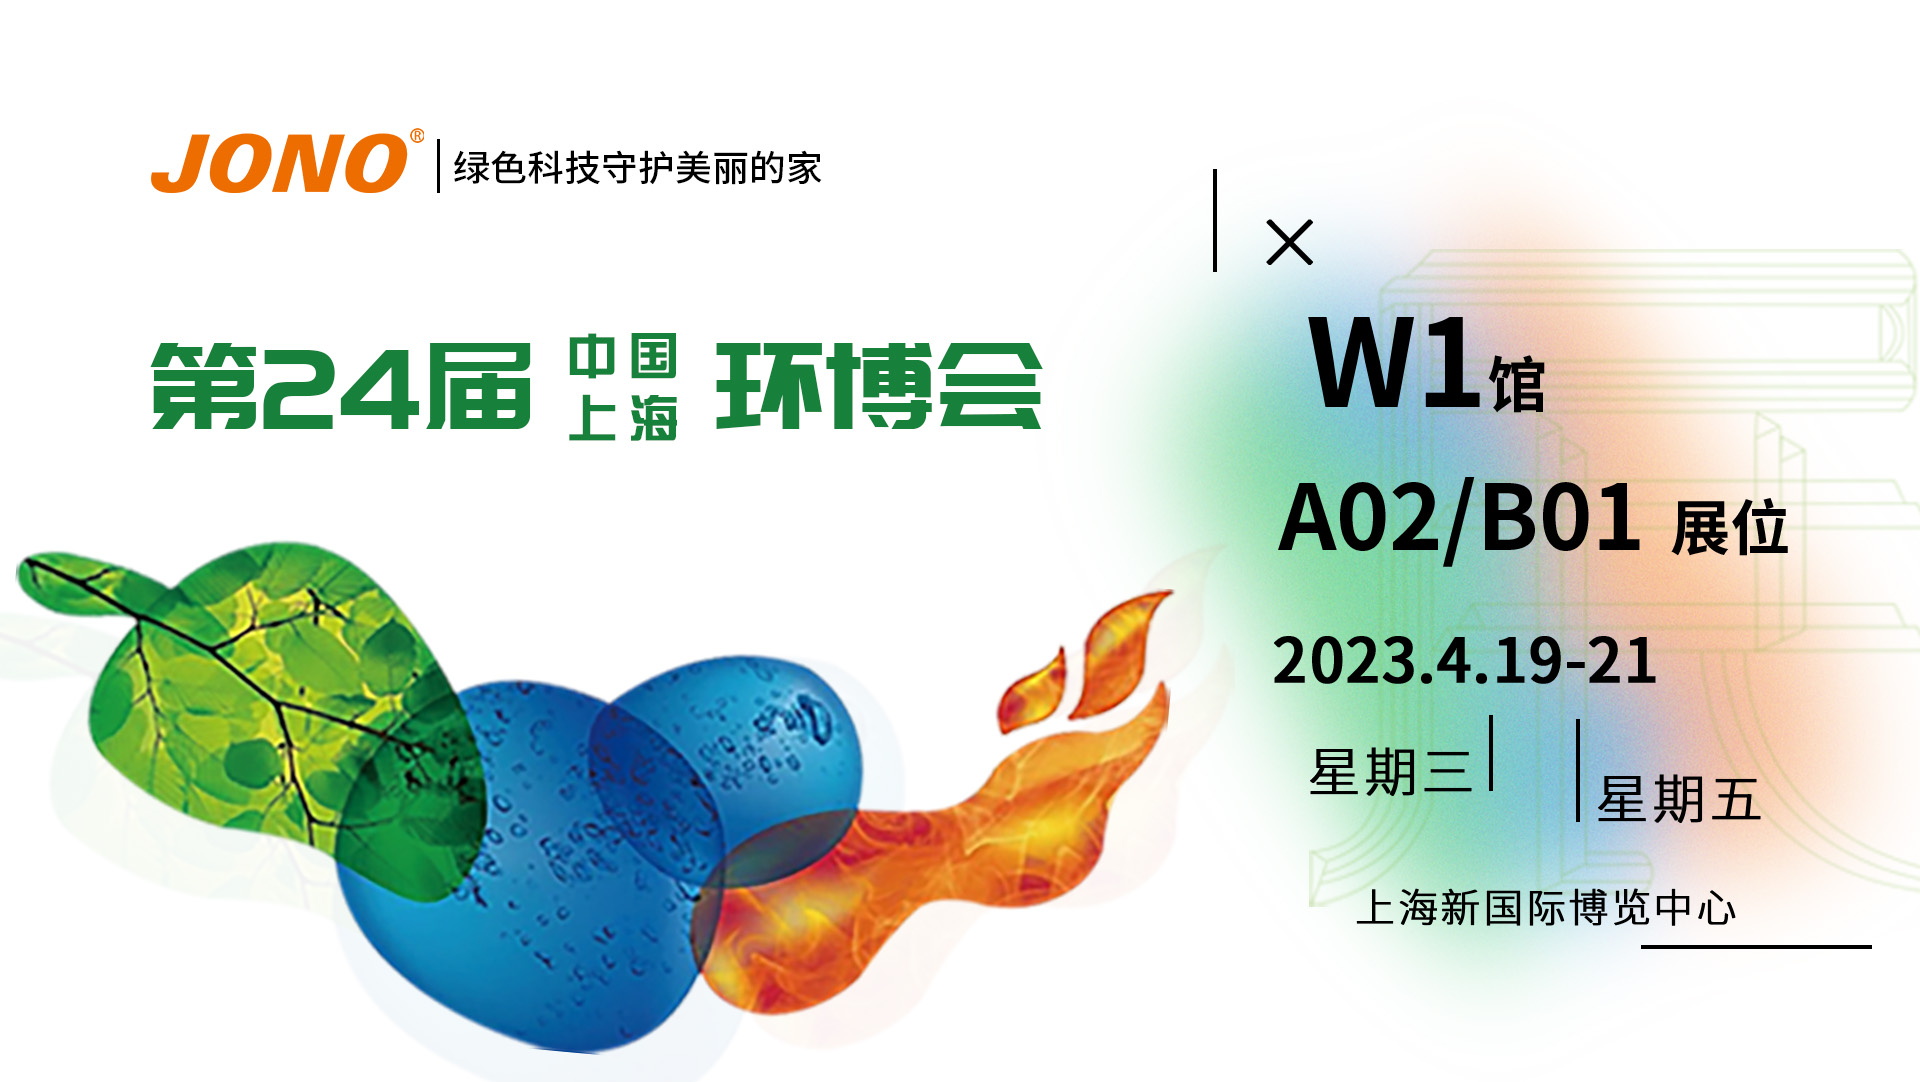 嘉諾科技與您相約第24屆中國環博會